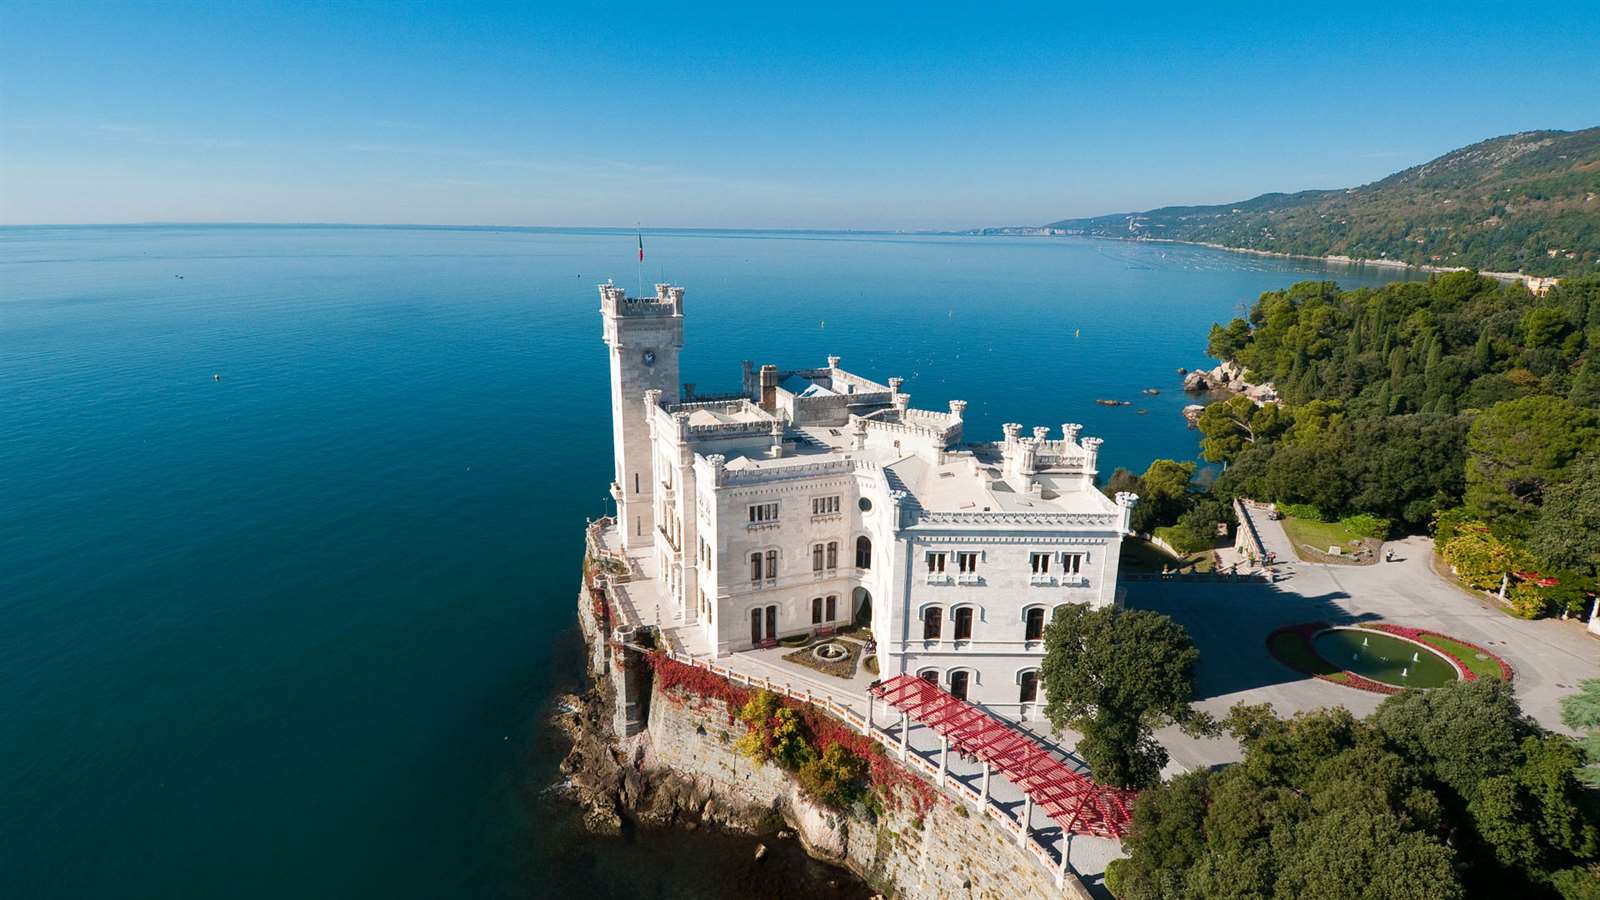 Castello Miramare, Trieste